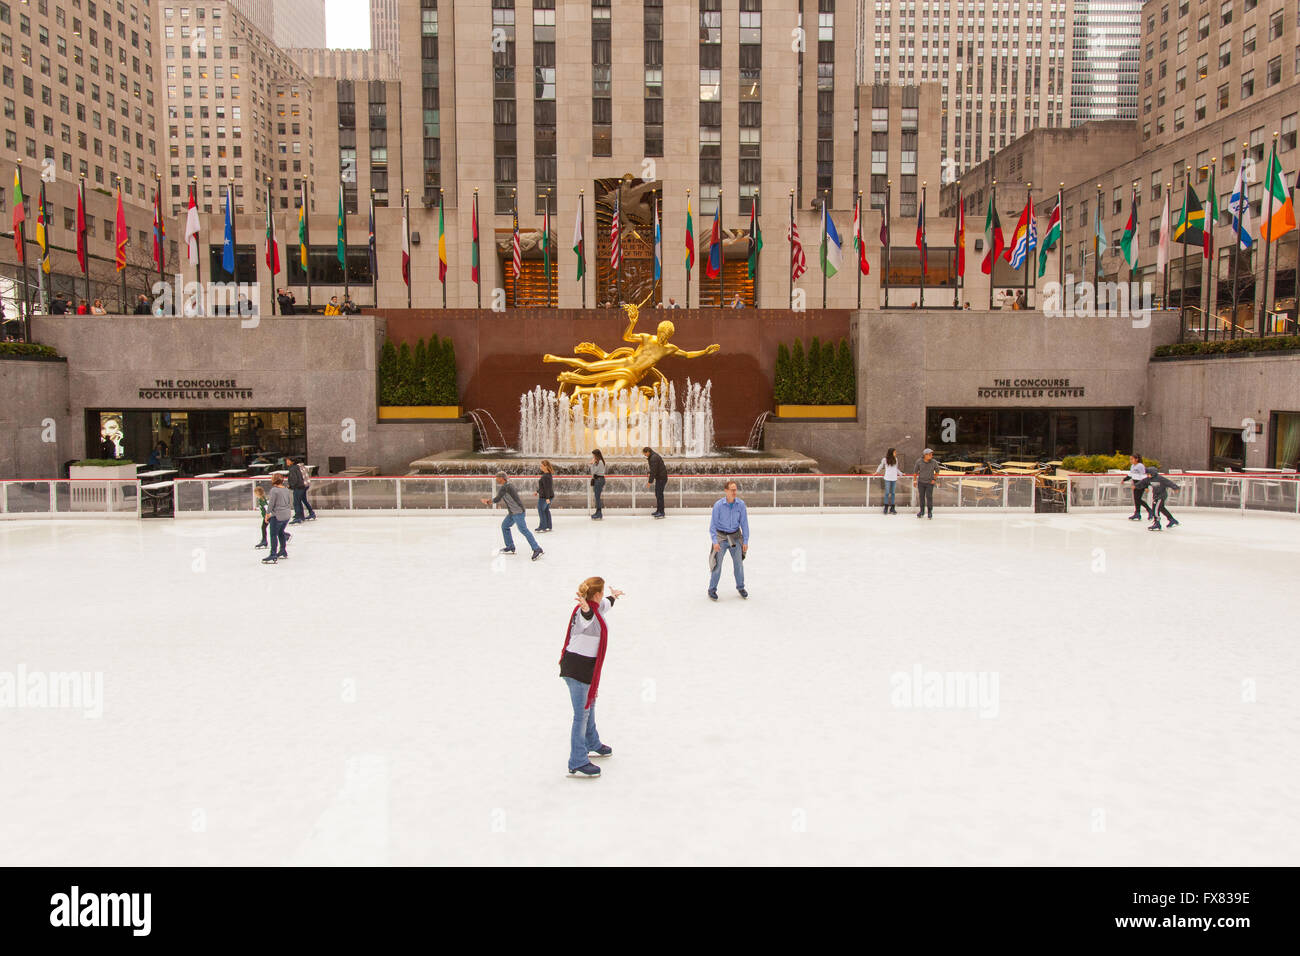 Pista di pattinaggio su ghiaccio al centro Rockefeller Plaza, Manhattan, New York City, Stati Uniti d'America. Foto Stock